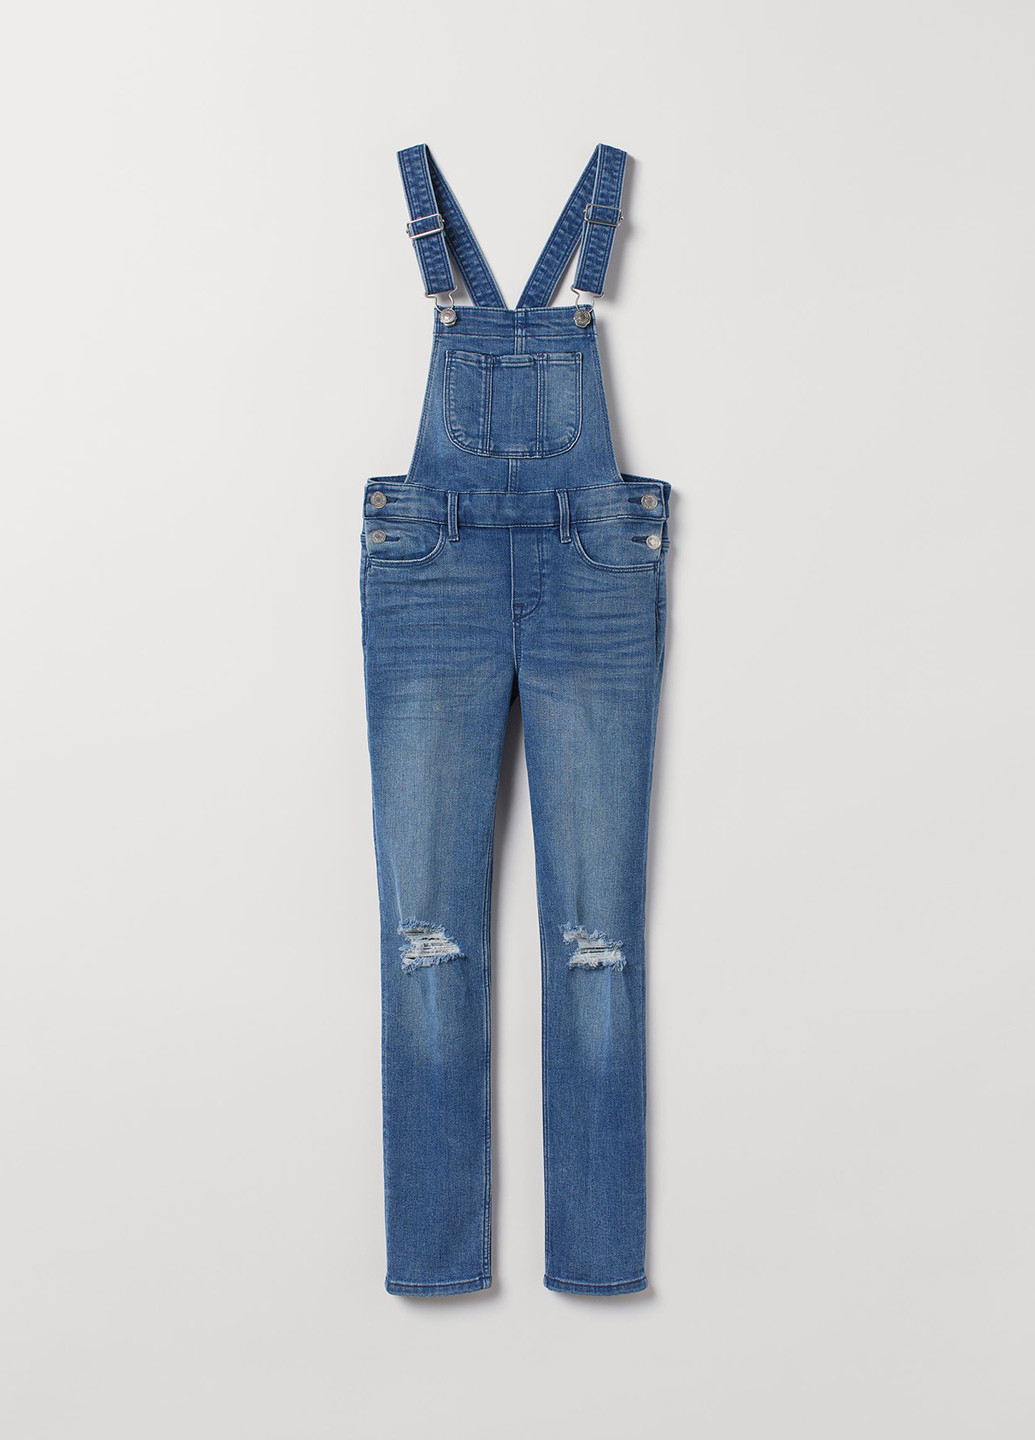 Комбинезон H&M комбинезон-брюки однотонный синий джинсовый хлопок